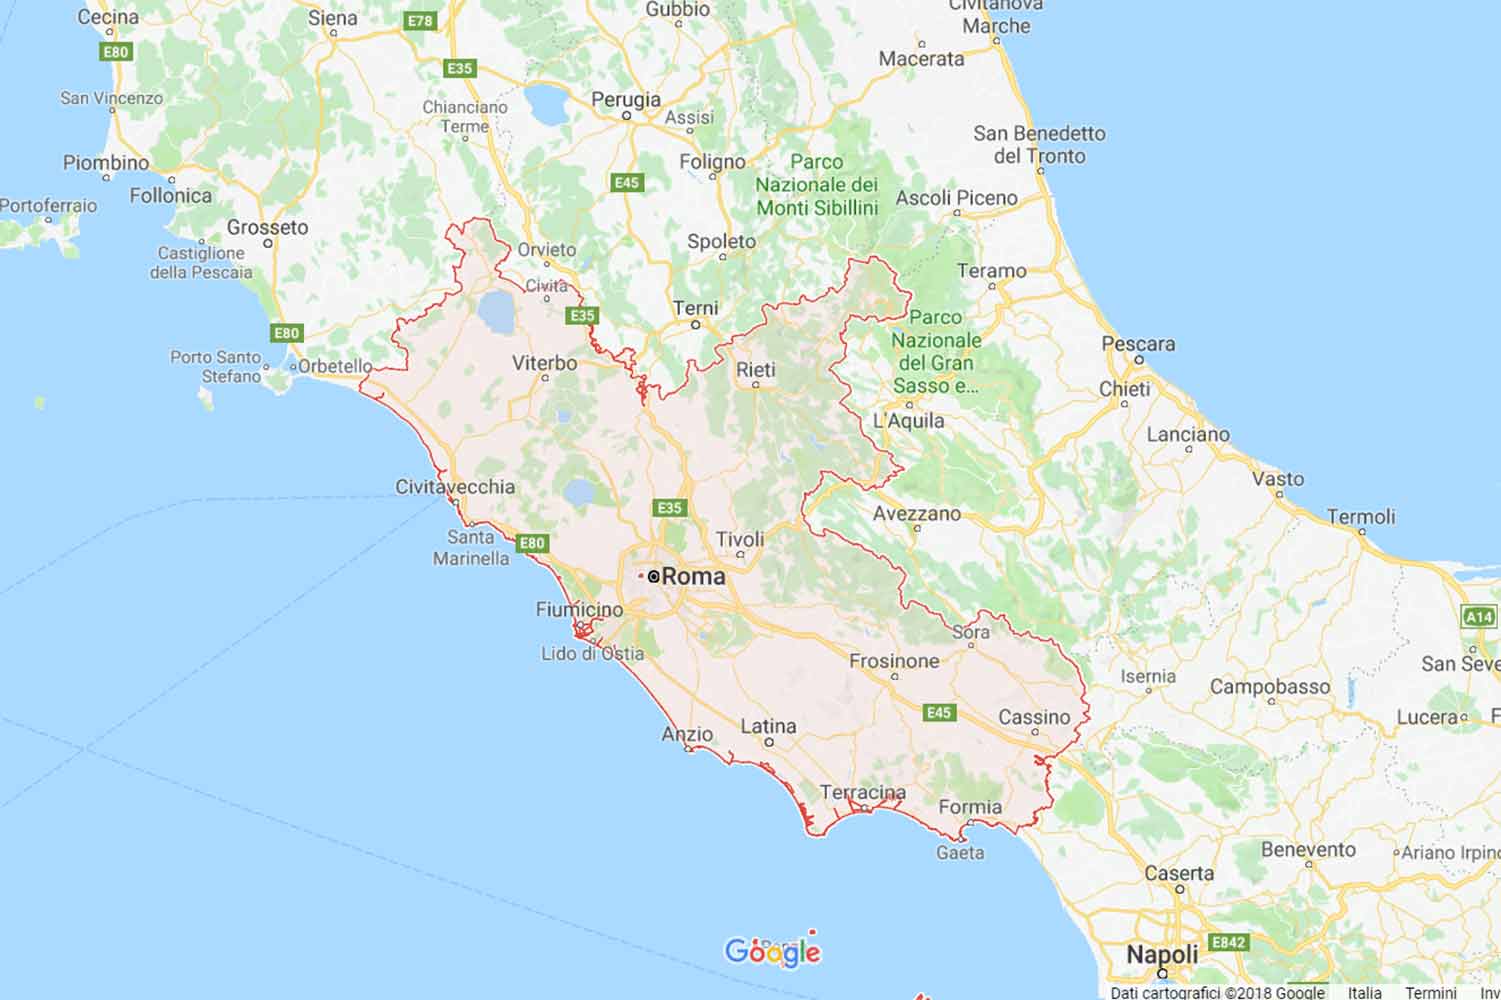 Lazio - Rieti - Collegiove Preventivi Veloci google maps